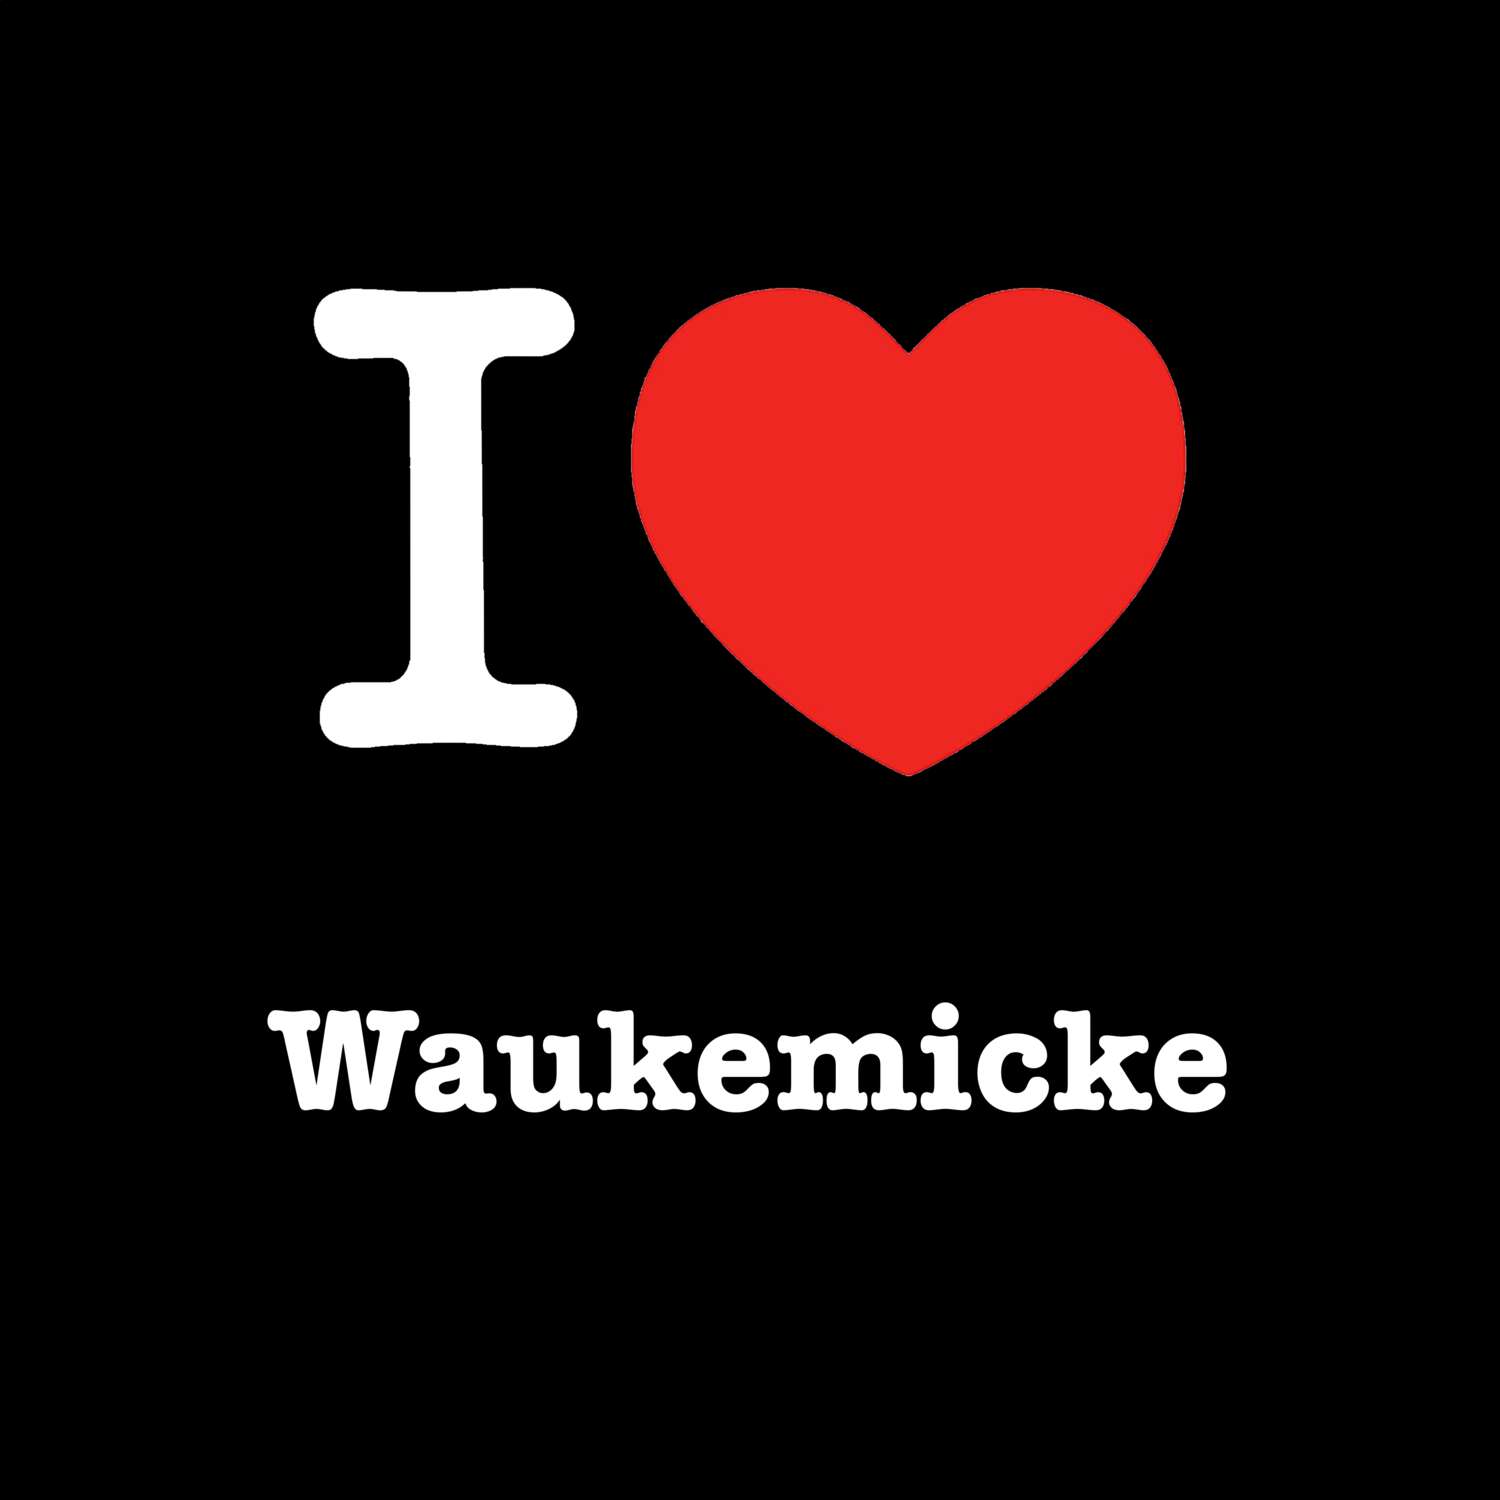 Waukemicke T-Shirt »I love«